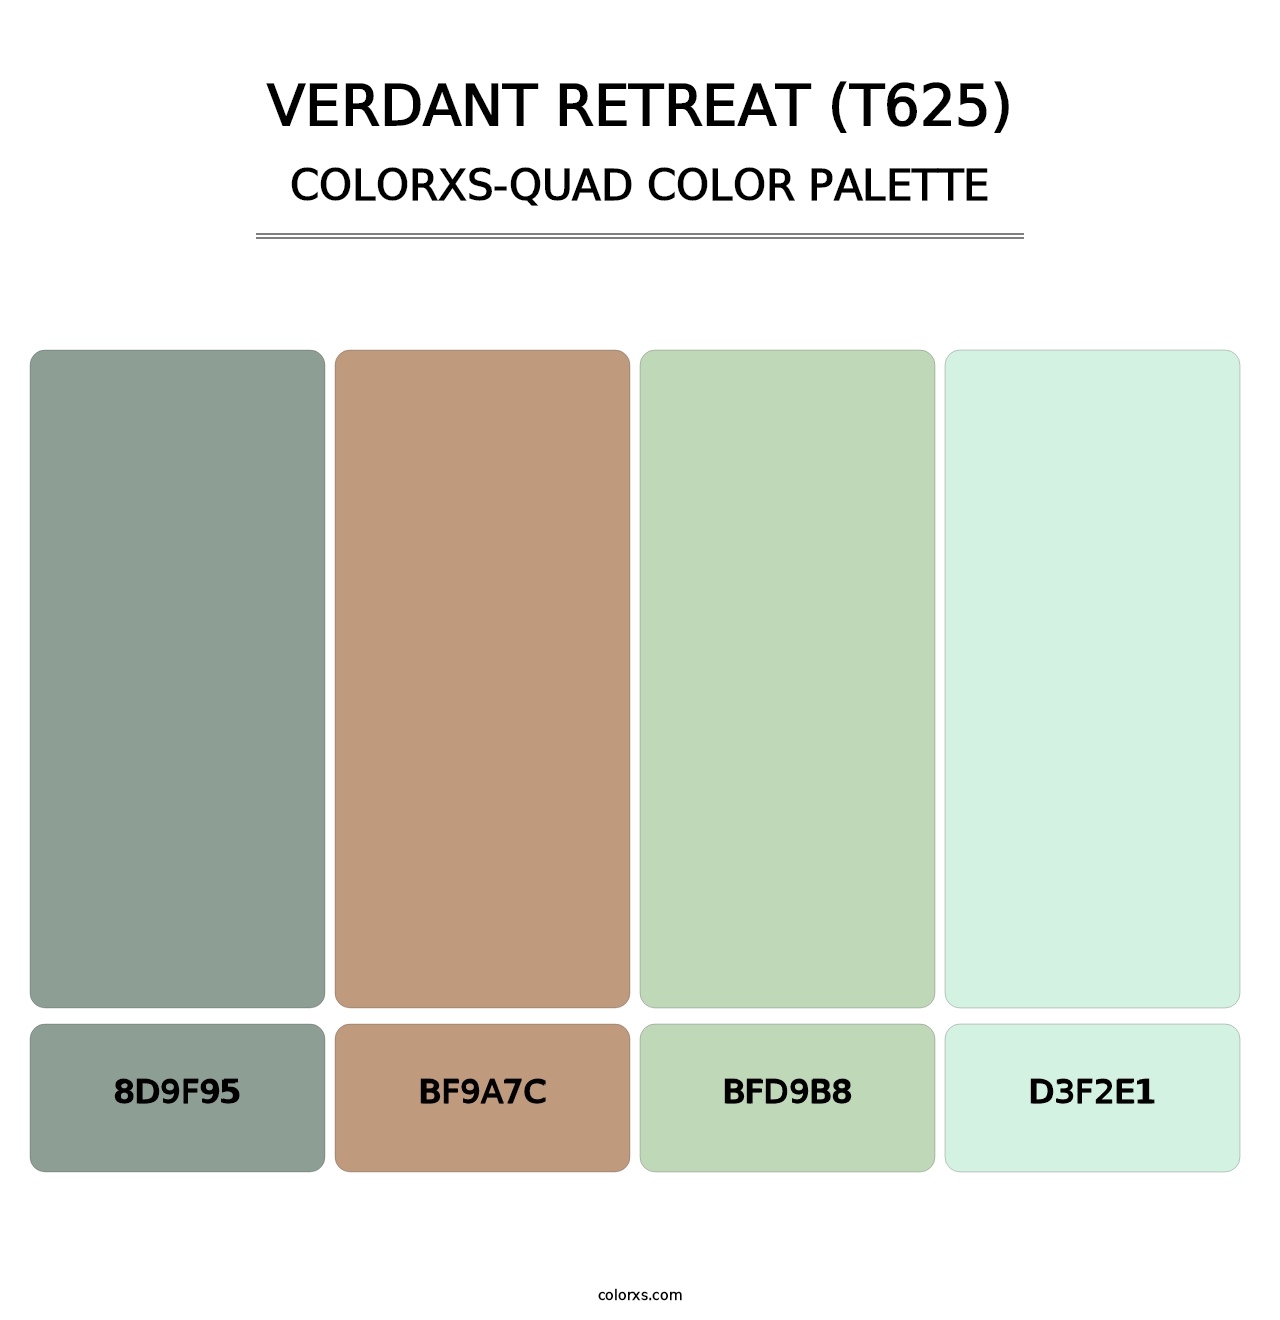 Verdant Retreat (T625) - Colorxs Quad Palette